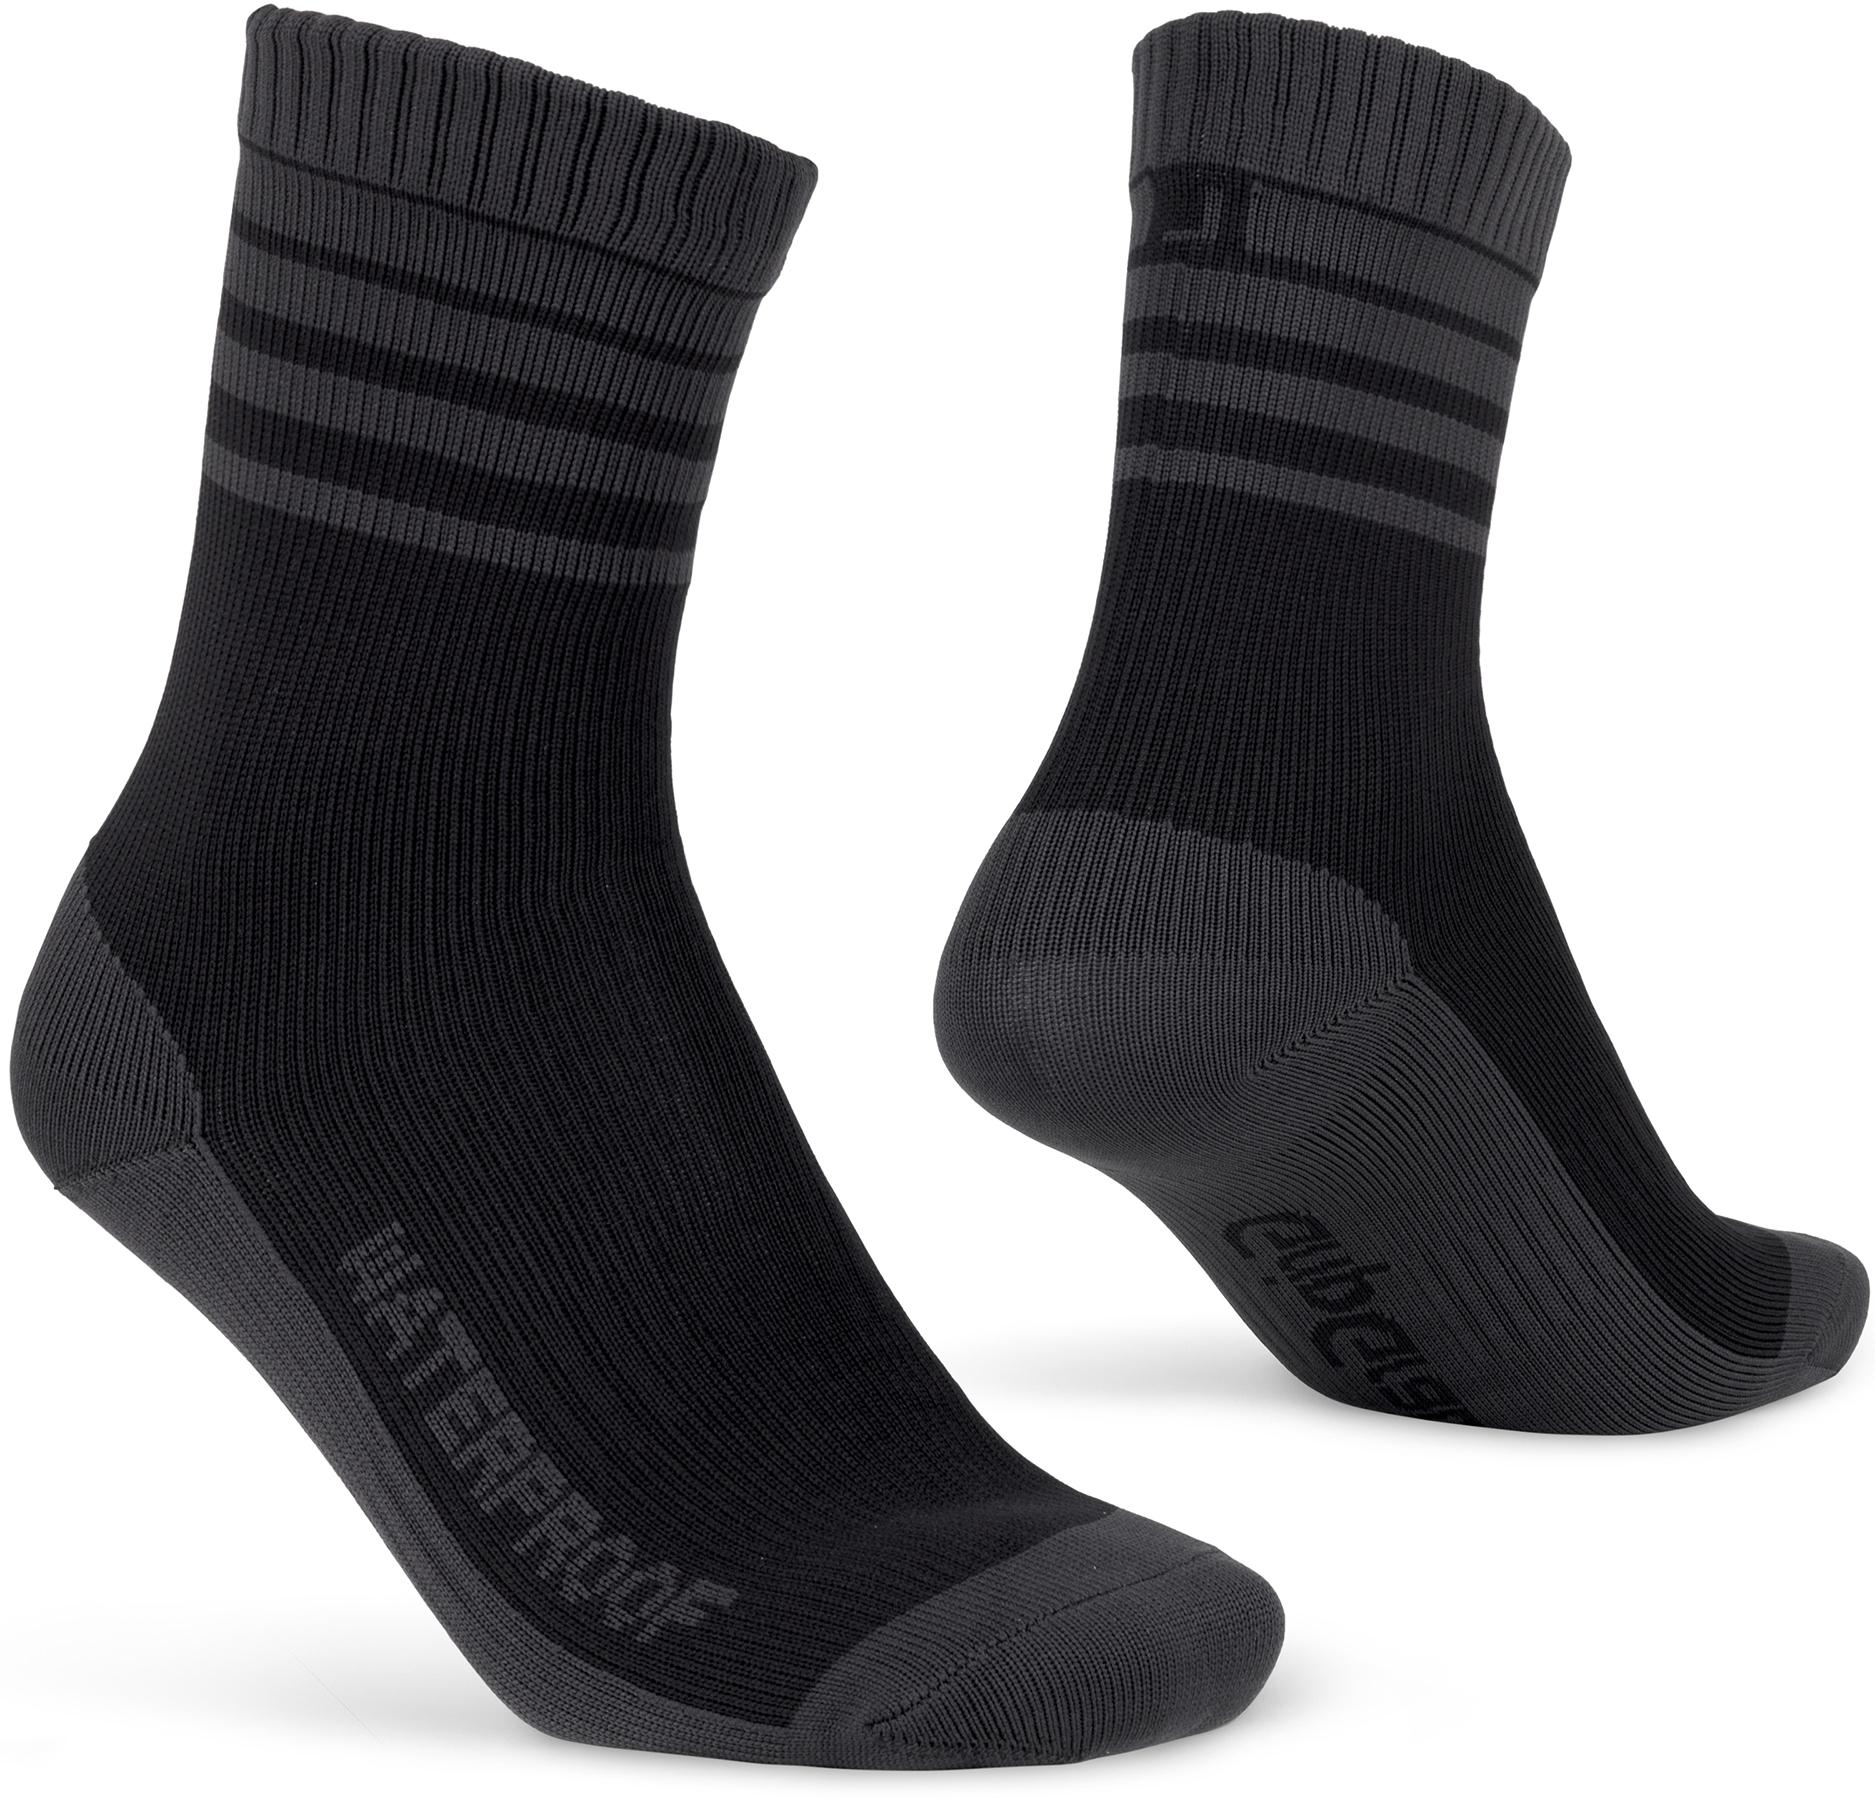 Gripgrab Waterproof Merino Thermal Socks - Black